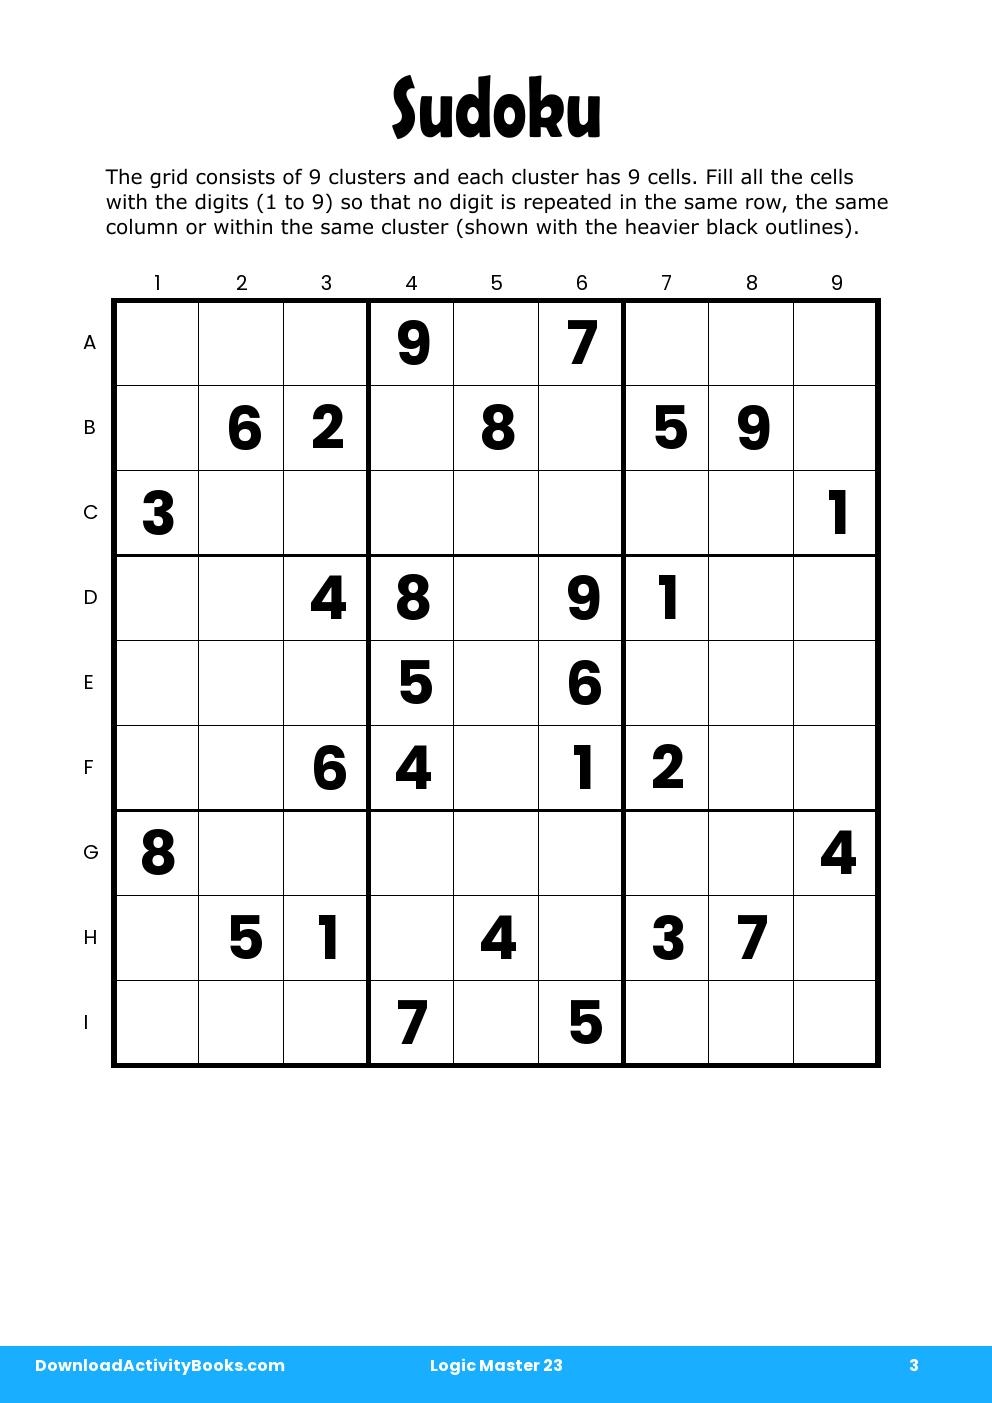 Sudoku in Logic Master 23